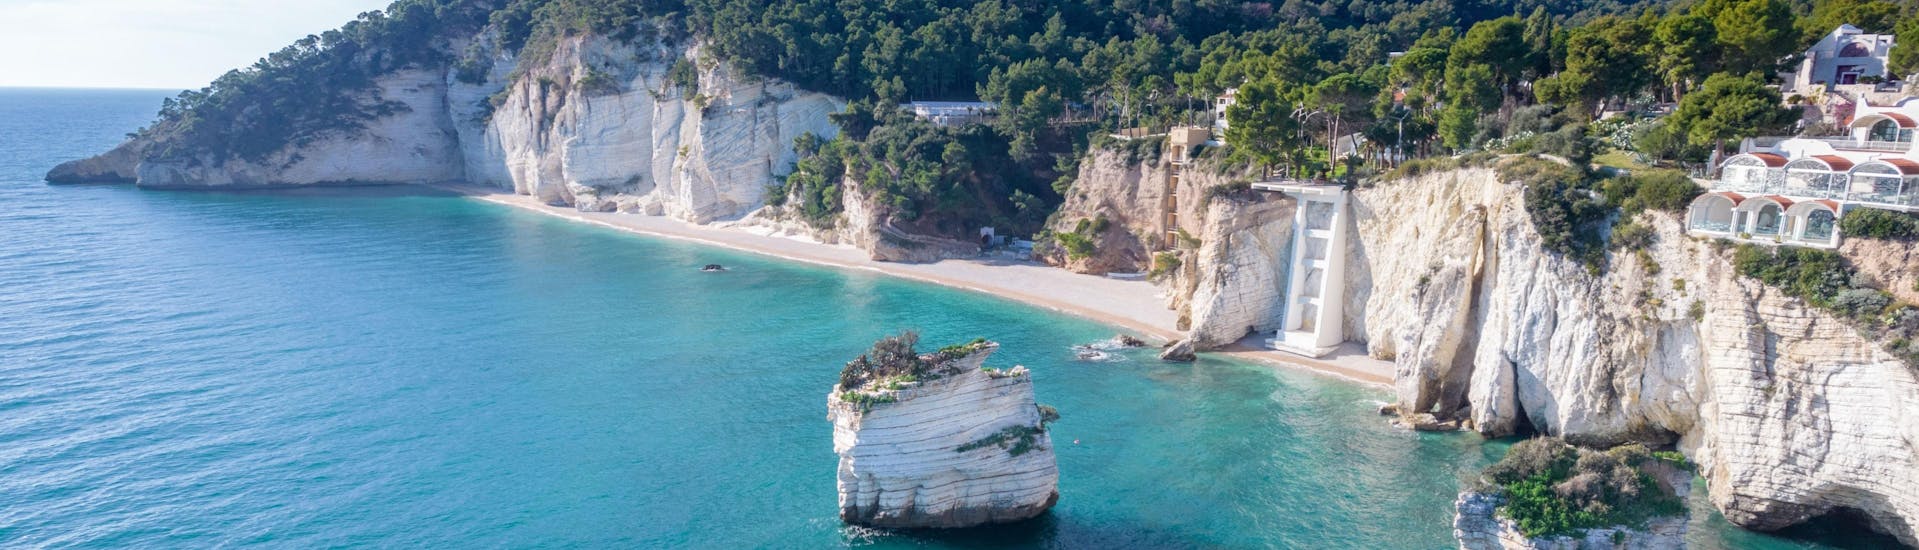 Vista de la maravillosa playa de Baia delle Zagare, uno de los principales destinos de los paseos en barco por la costa del Gargano.